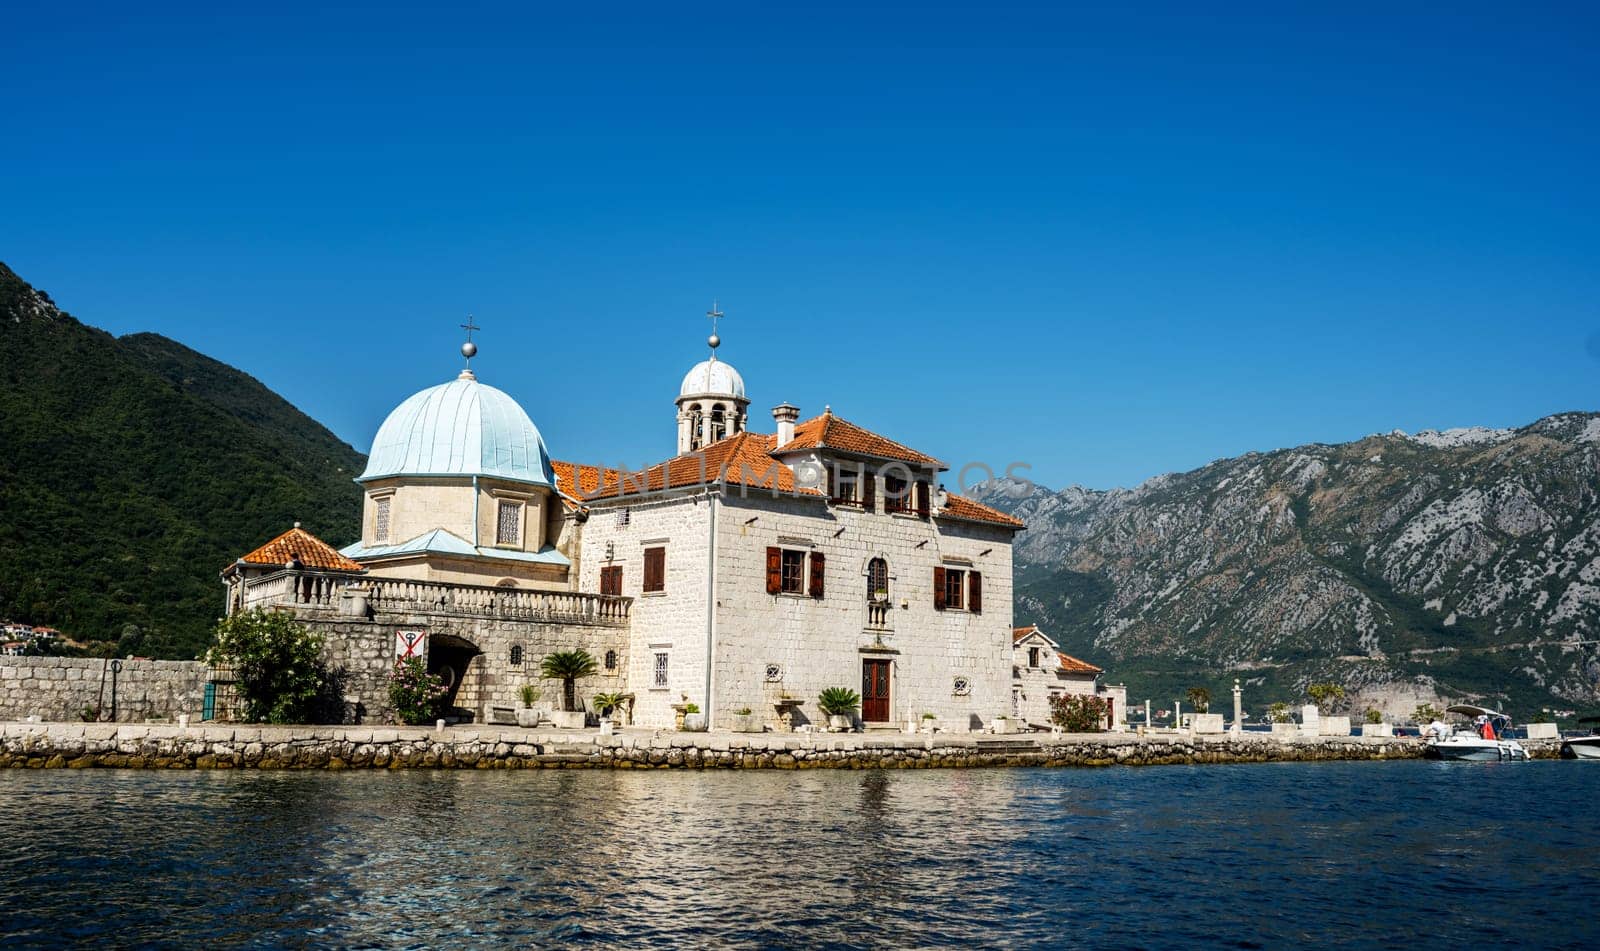 Saint George island in Montenegro by GekaSkr